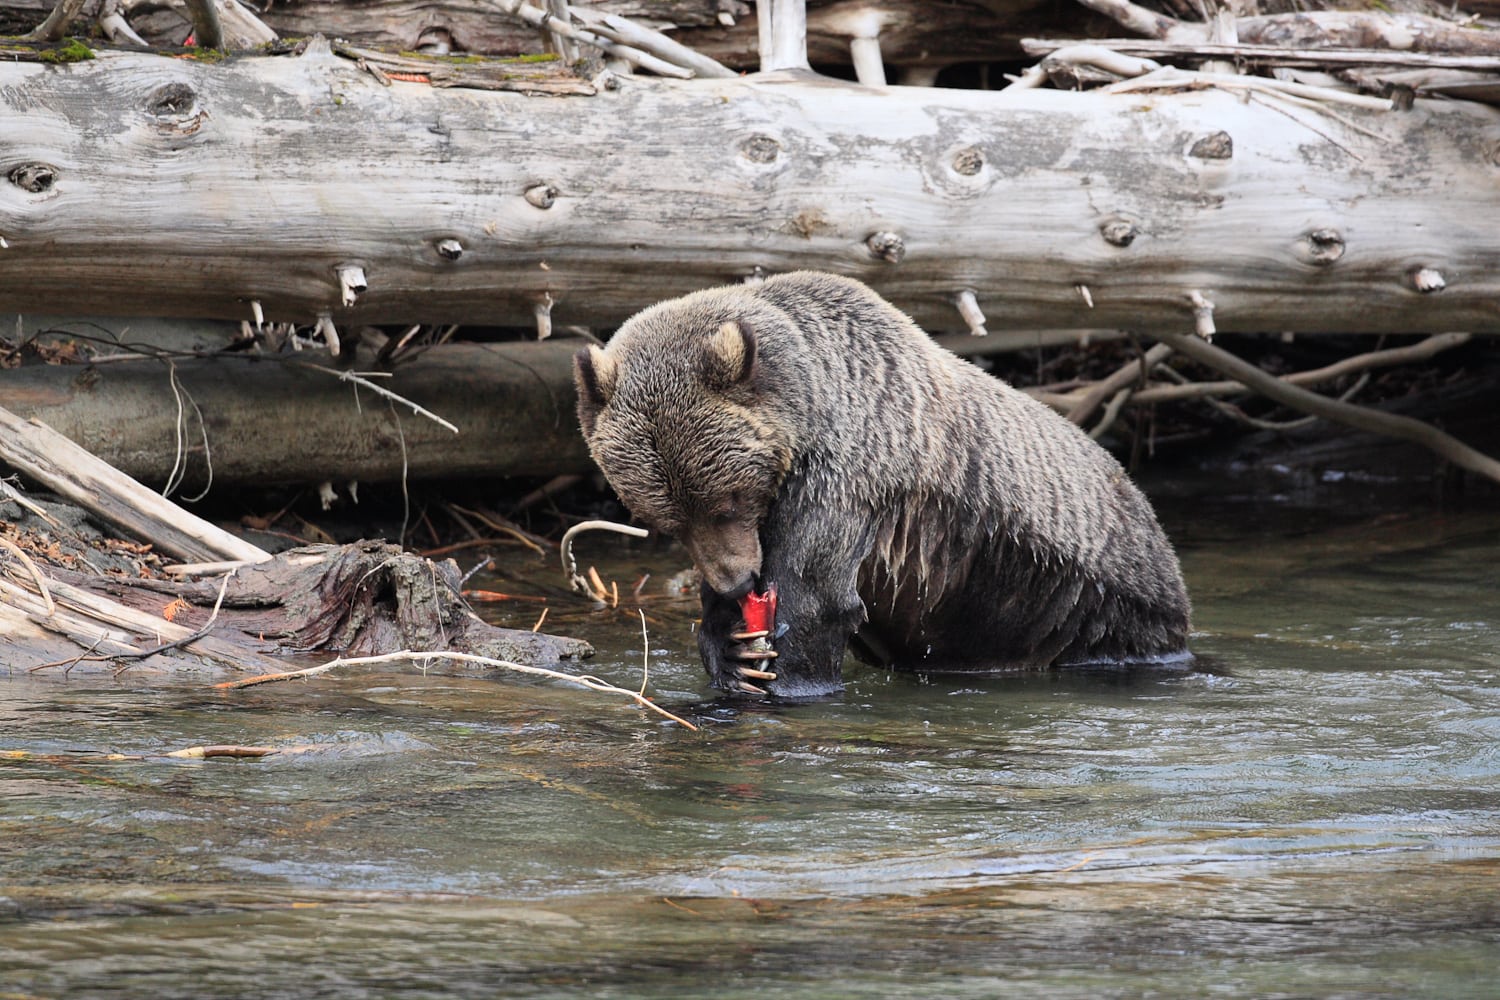 A bear fishing at Wild Bear Lodge